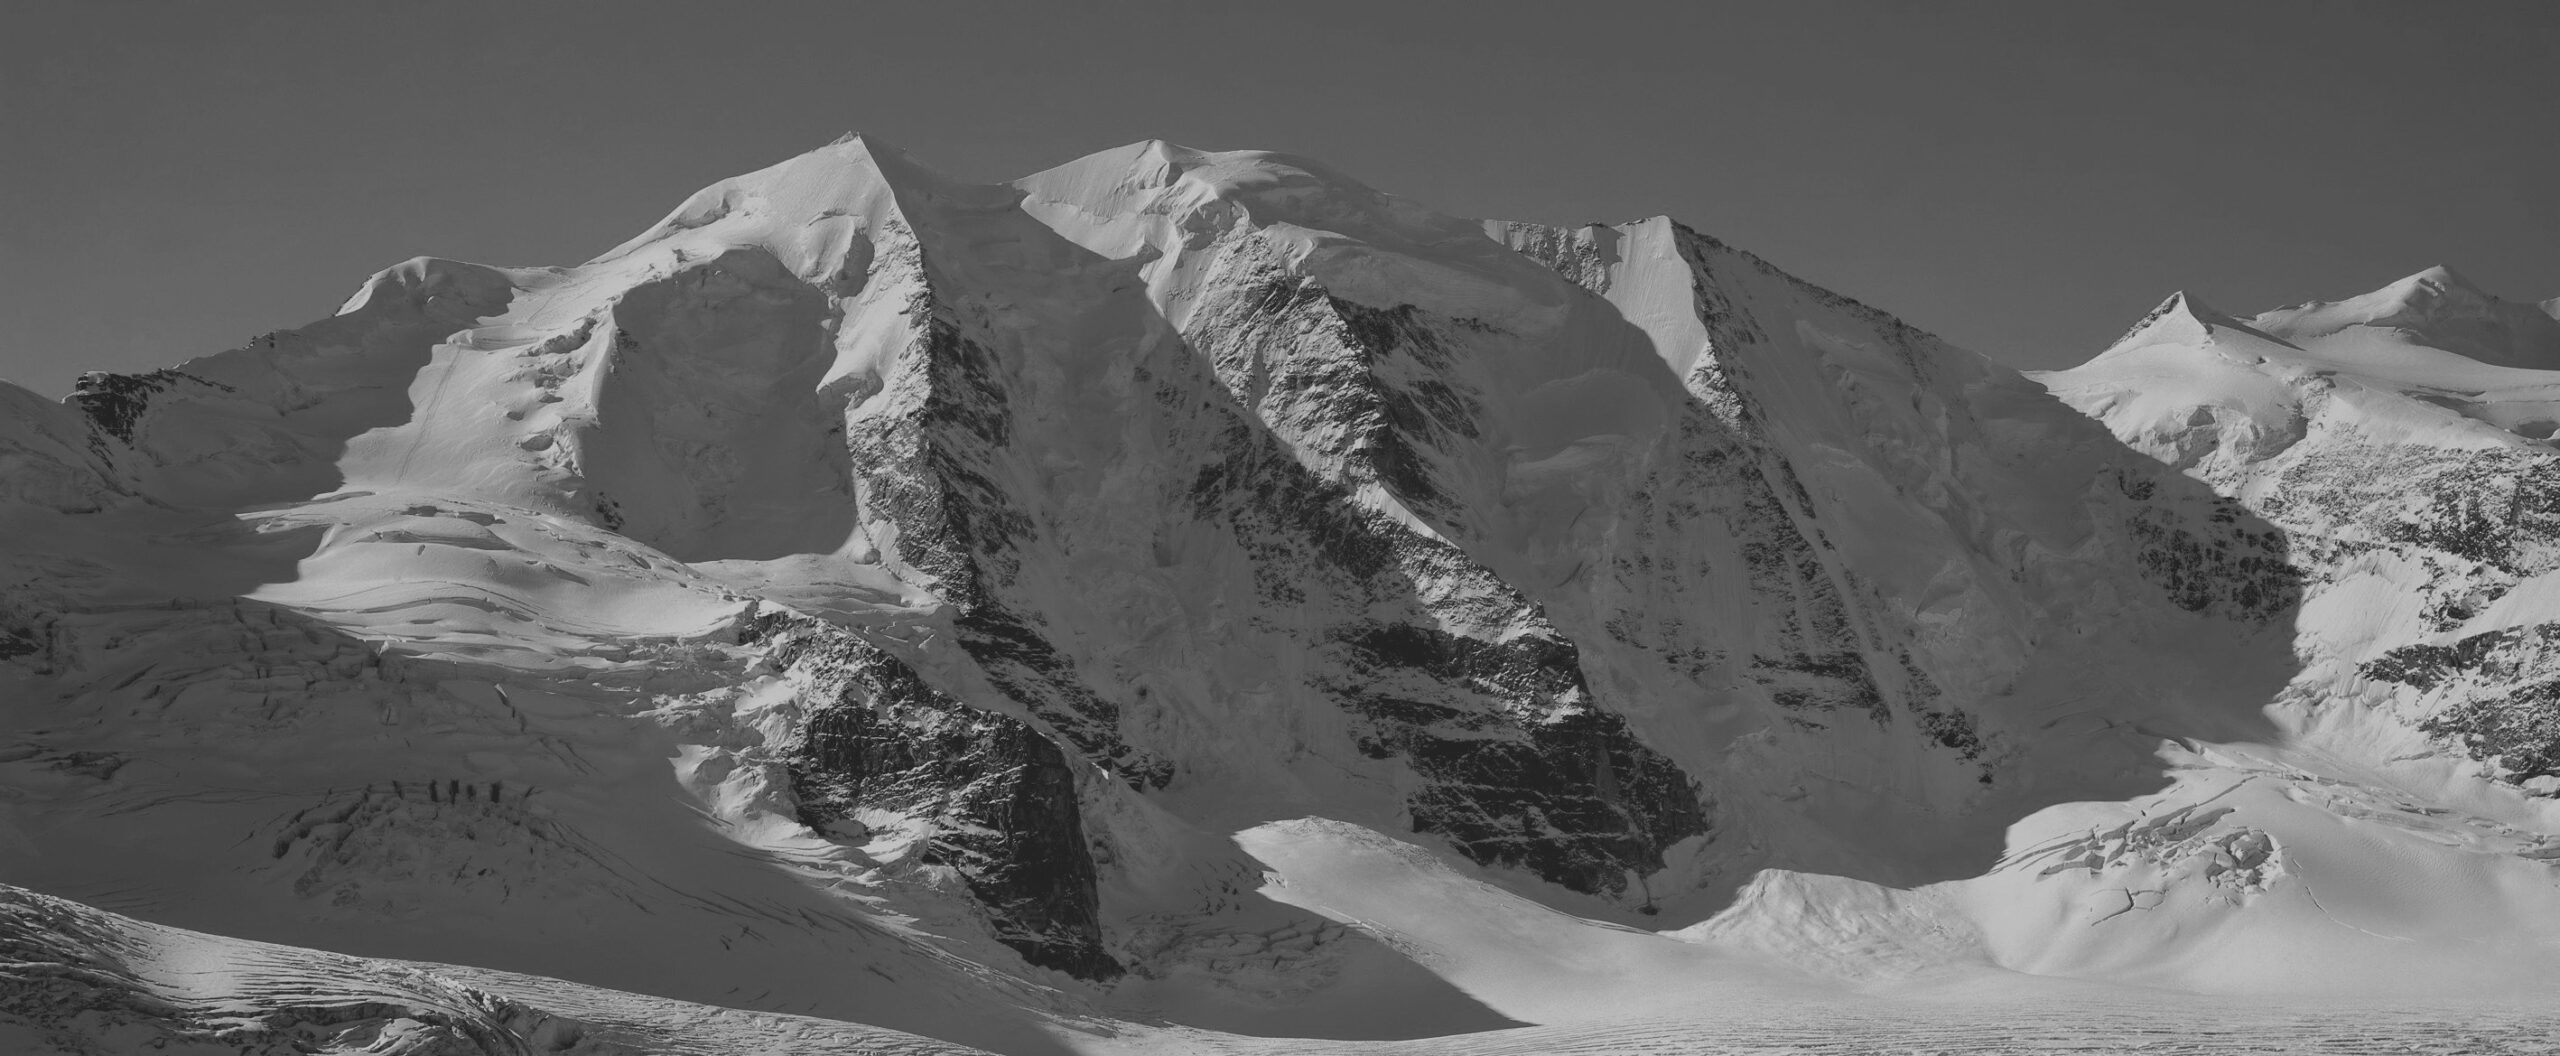 Mit seinen drei Gipfeln und vier nordseitig eingelagerten Hängegletschern, die von drei sich ebenmässig aus dem Persgletscher erhebenden Pfeilern getrennt werden, gilt der Palü als einer der schönsten Gletscherberge überhaupt.